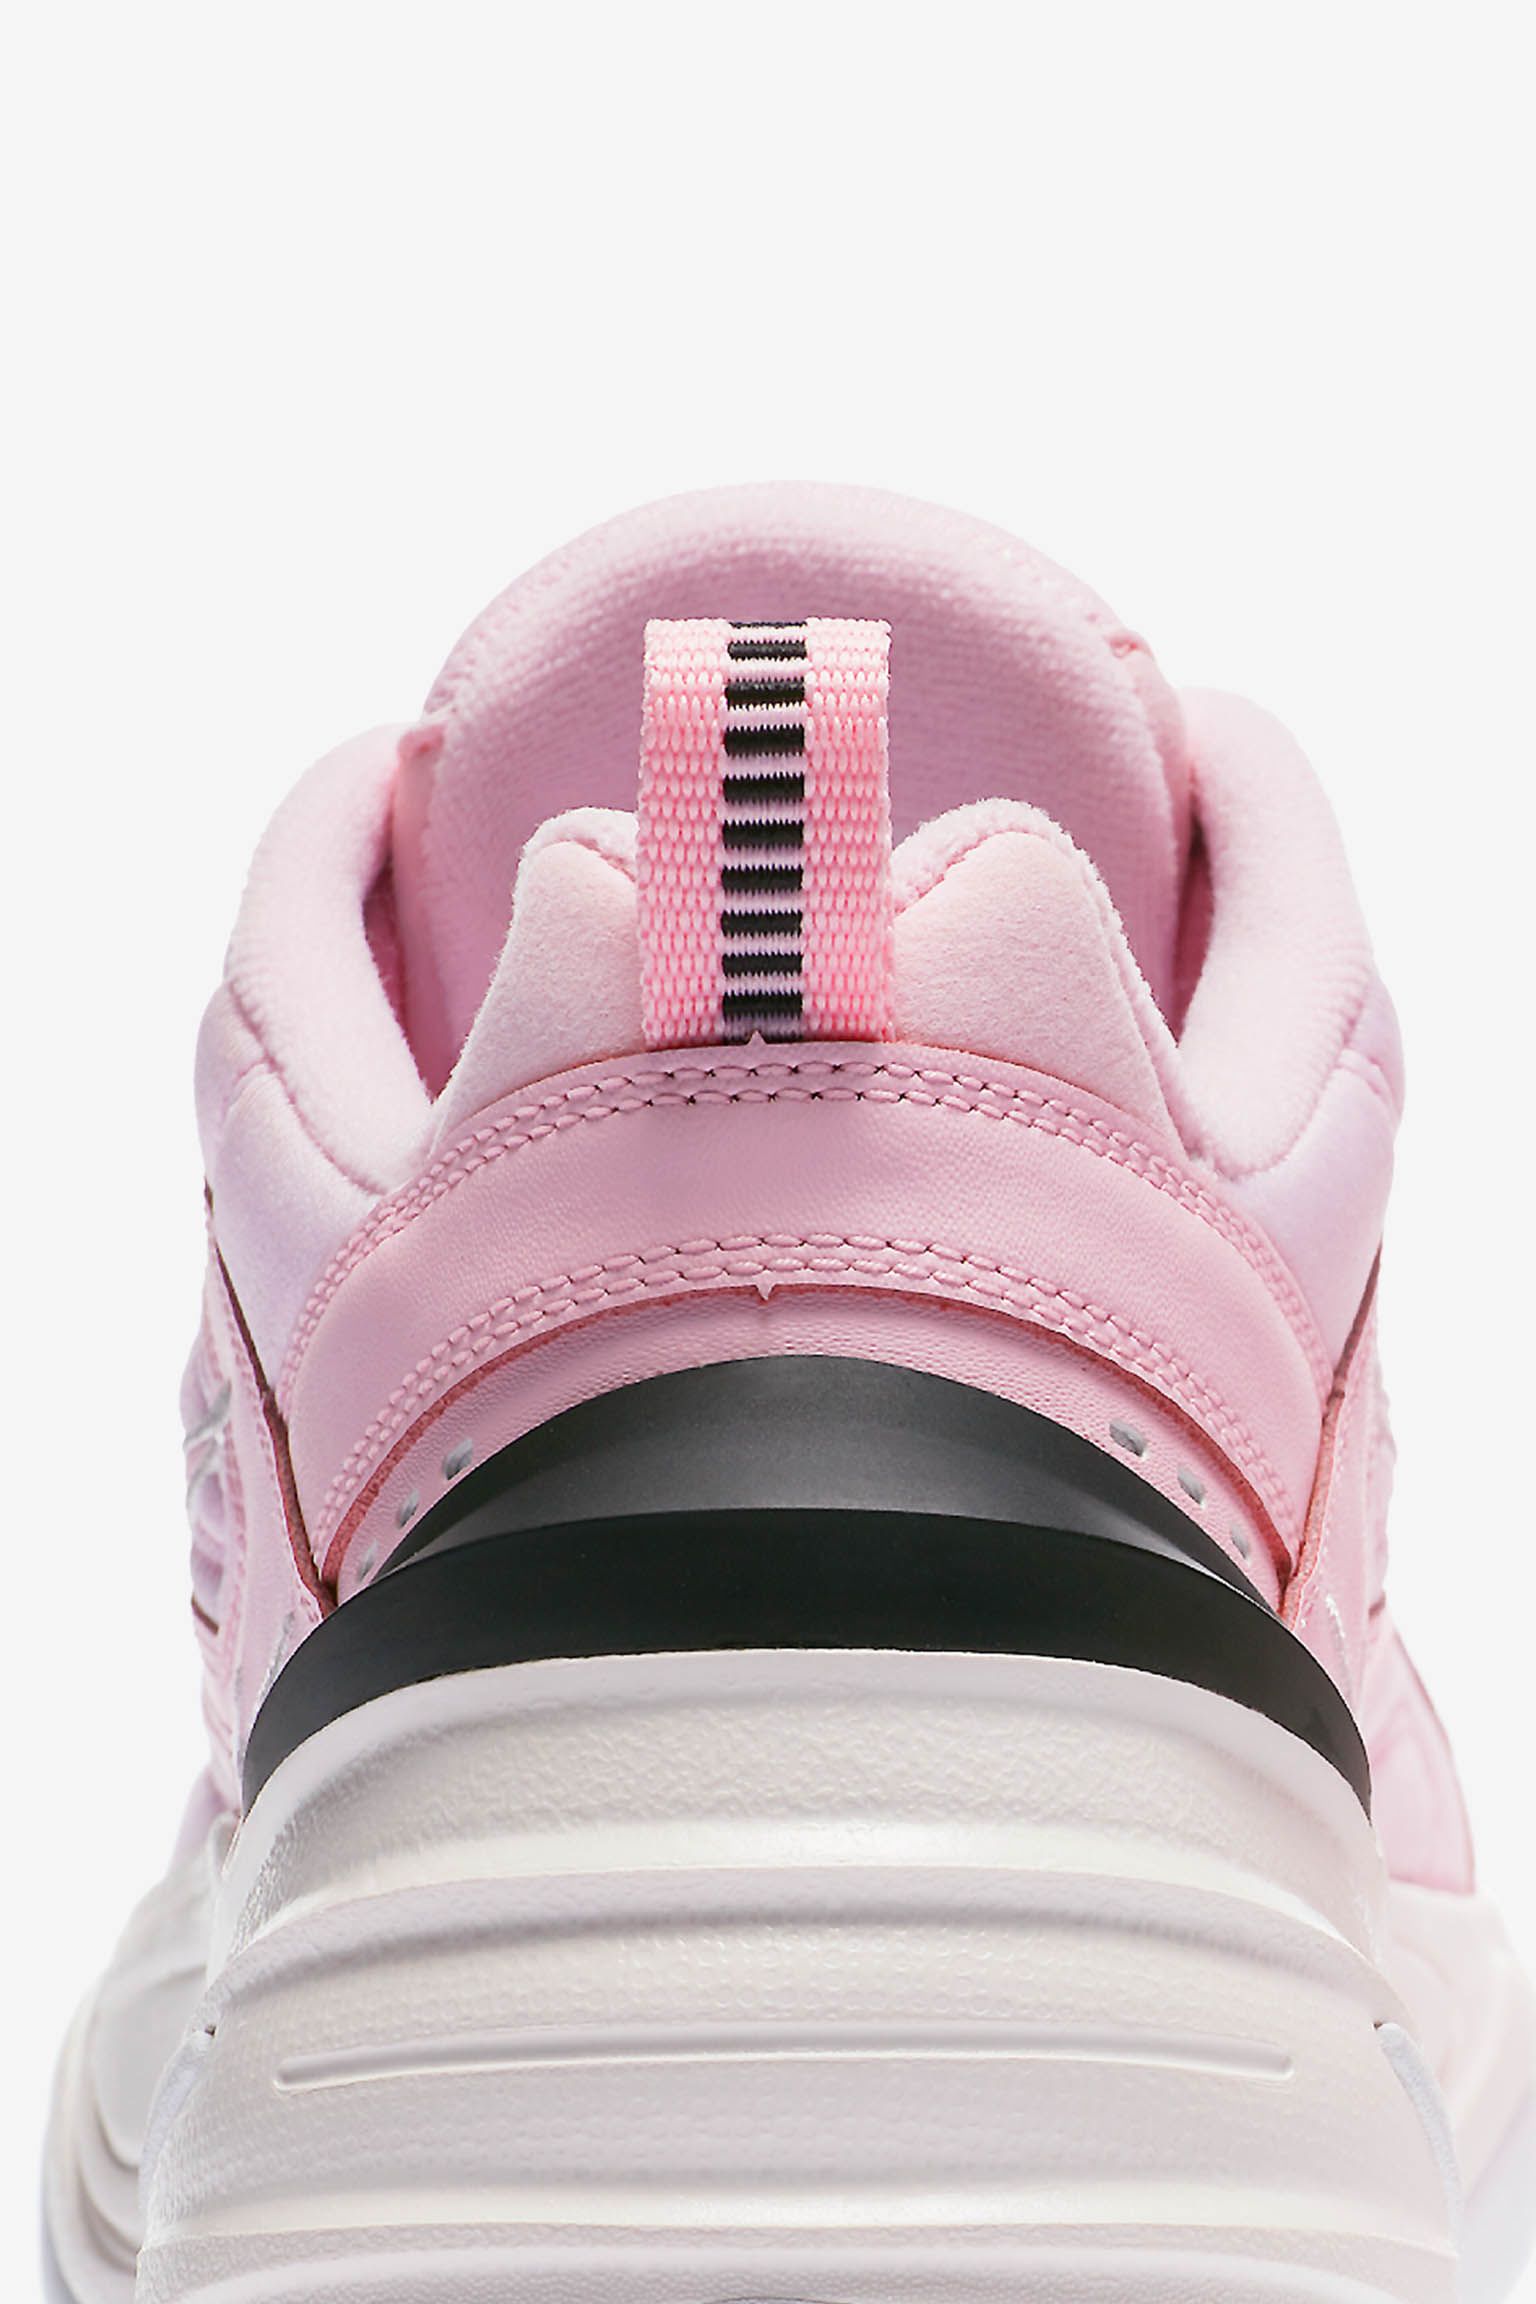 Nike Women's M2K Tekno 'Pink Foam & Phantom' Release Date. Nike SNKRS